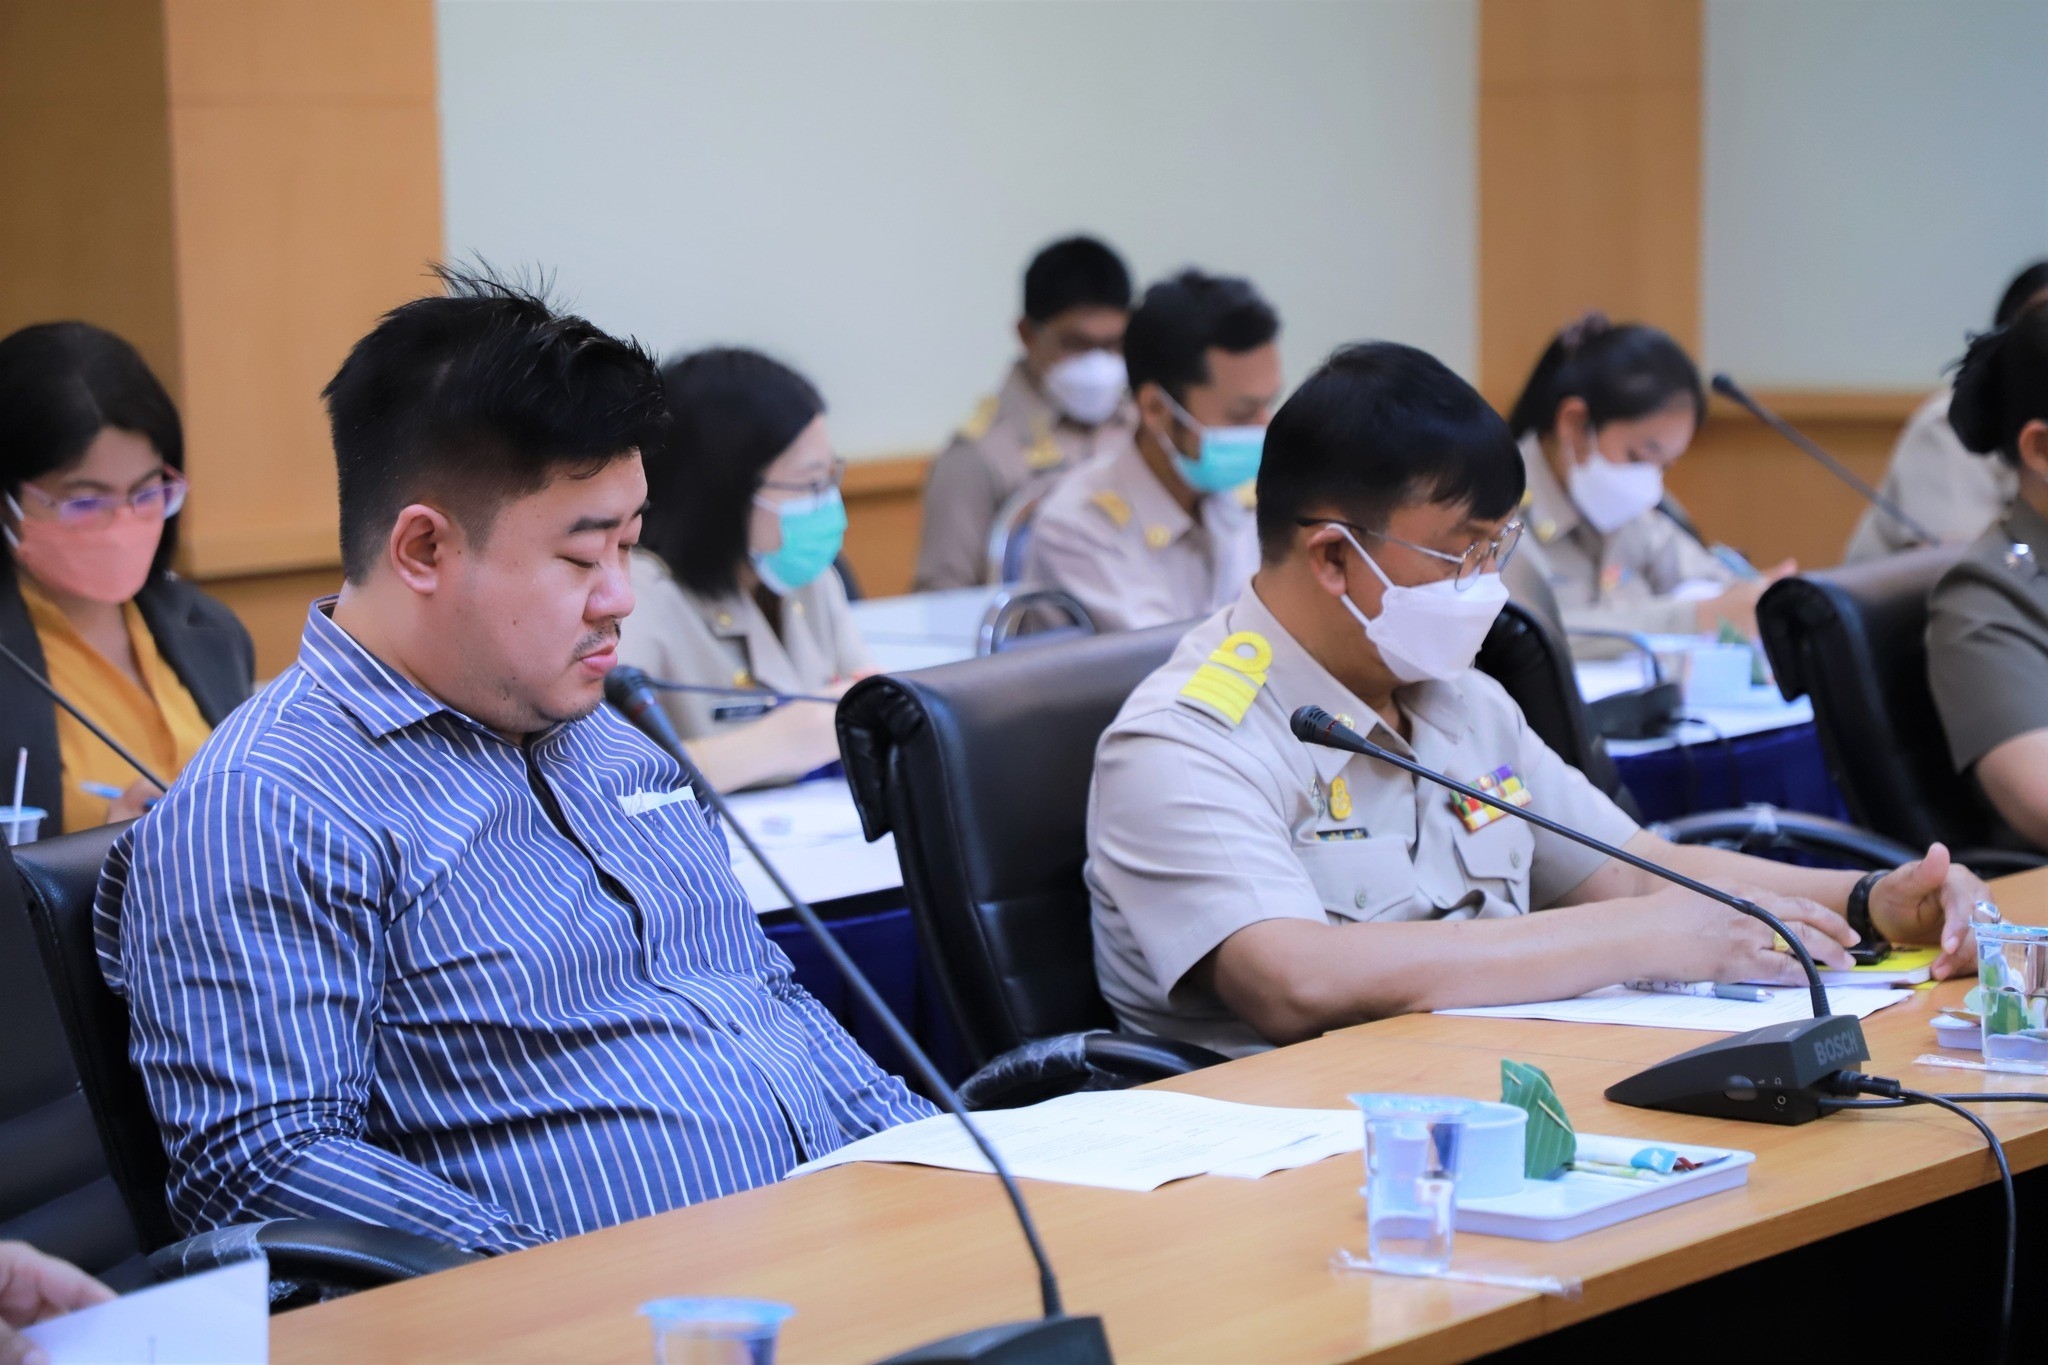 หอการค้าจังหวัดสงขลา ร่วมประชุมคณะกรรมการขับเคลื่อน “สงขลาเมืองอัจฉริยะ” (Songkhla Smart City) ครั้งที่ 1/2566